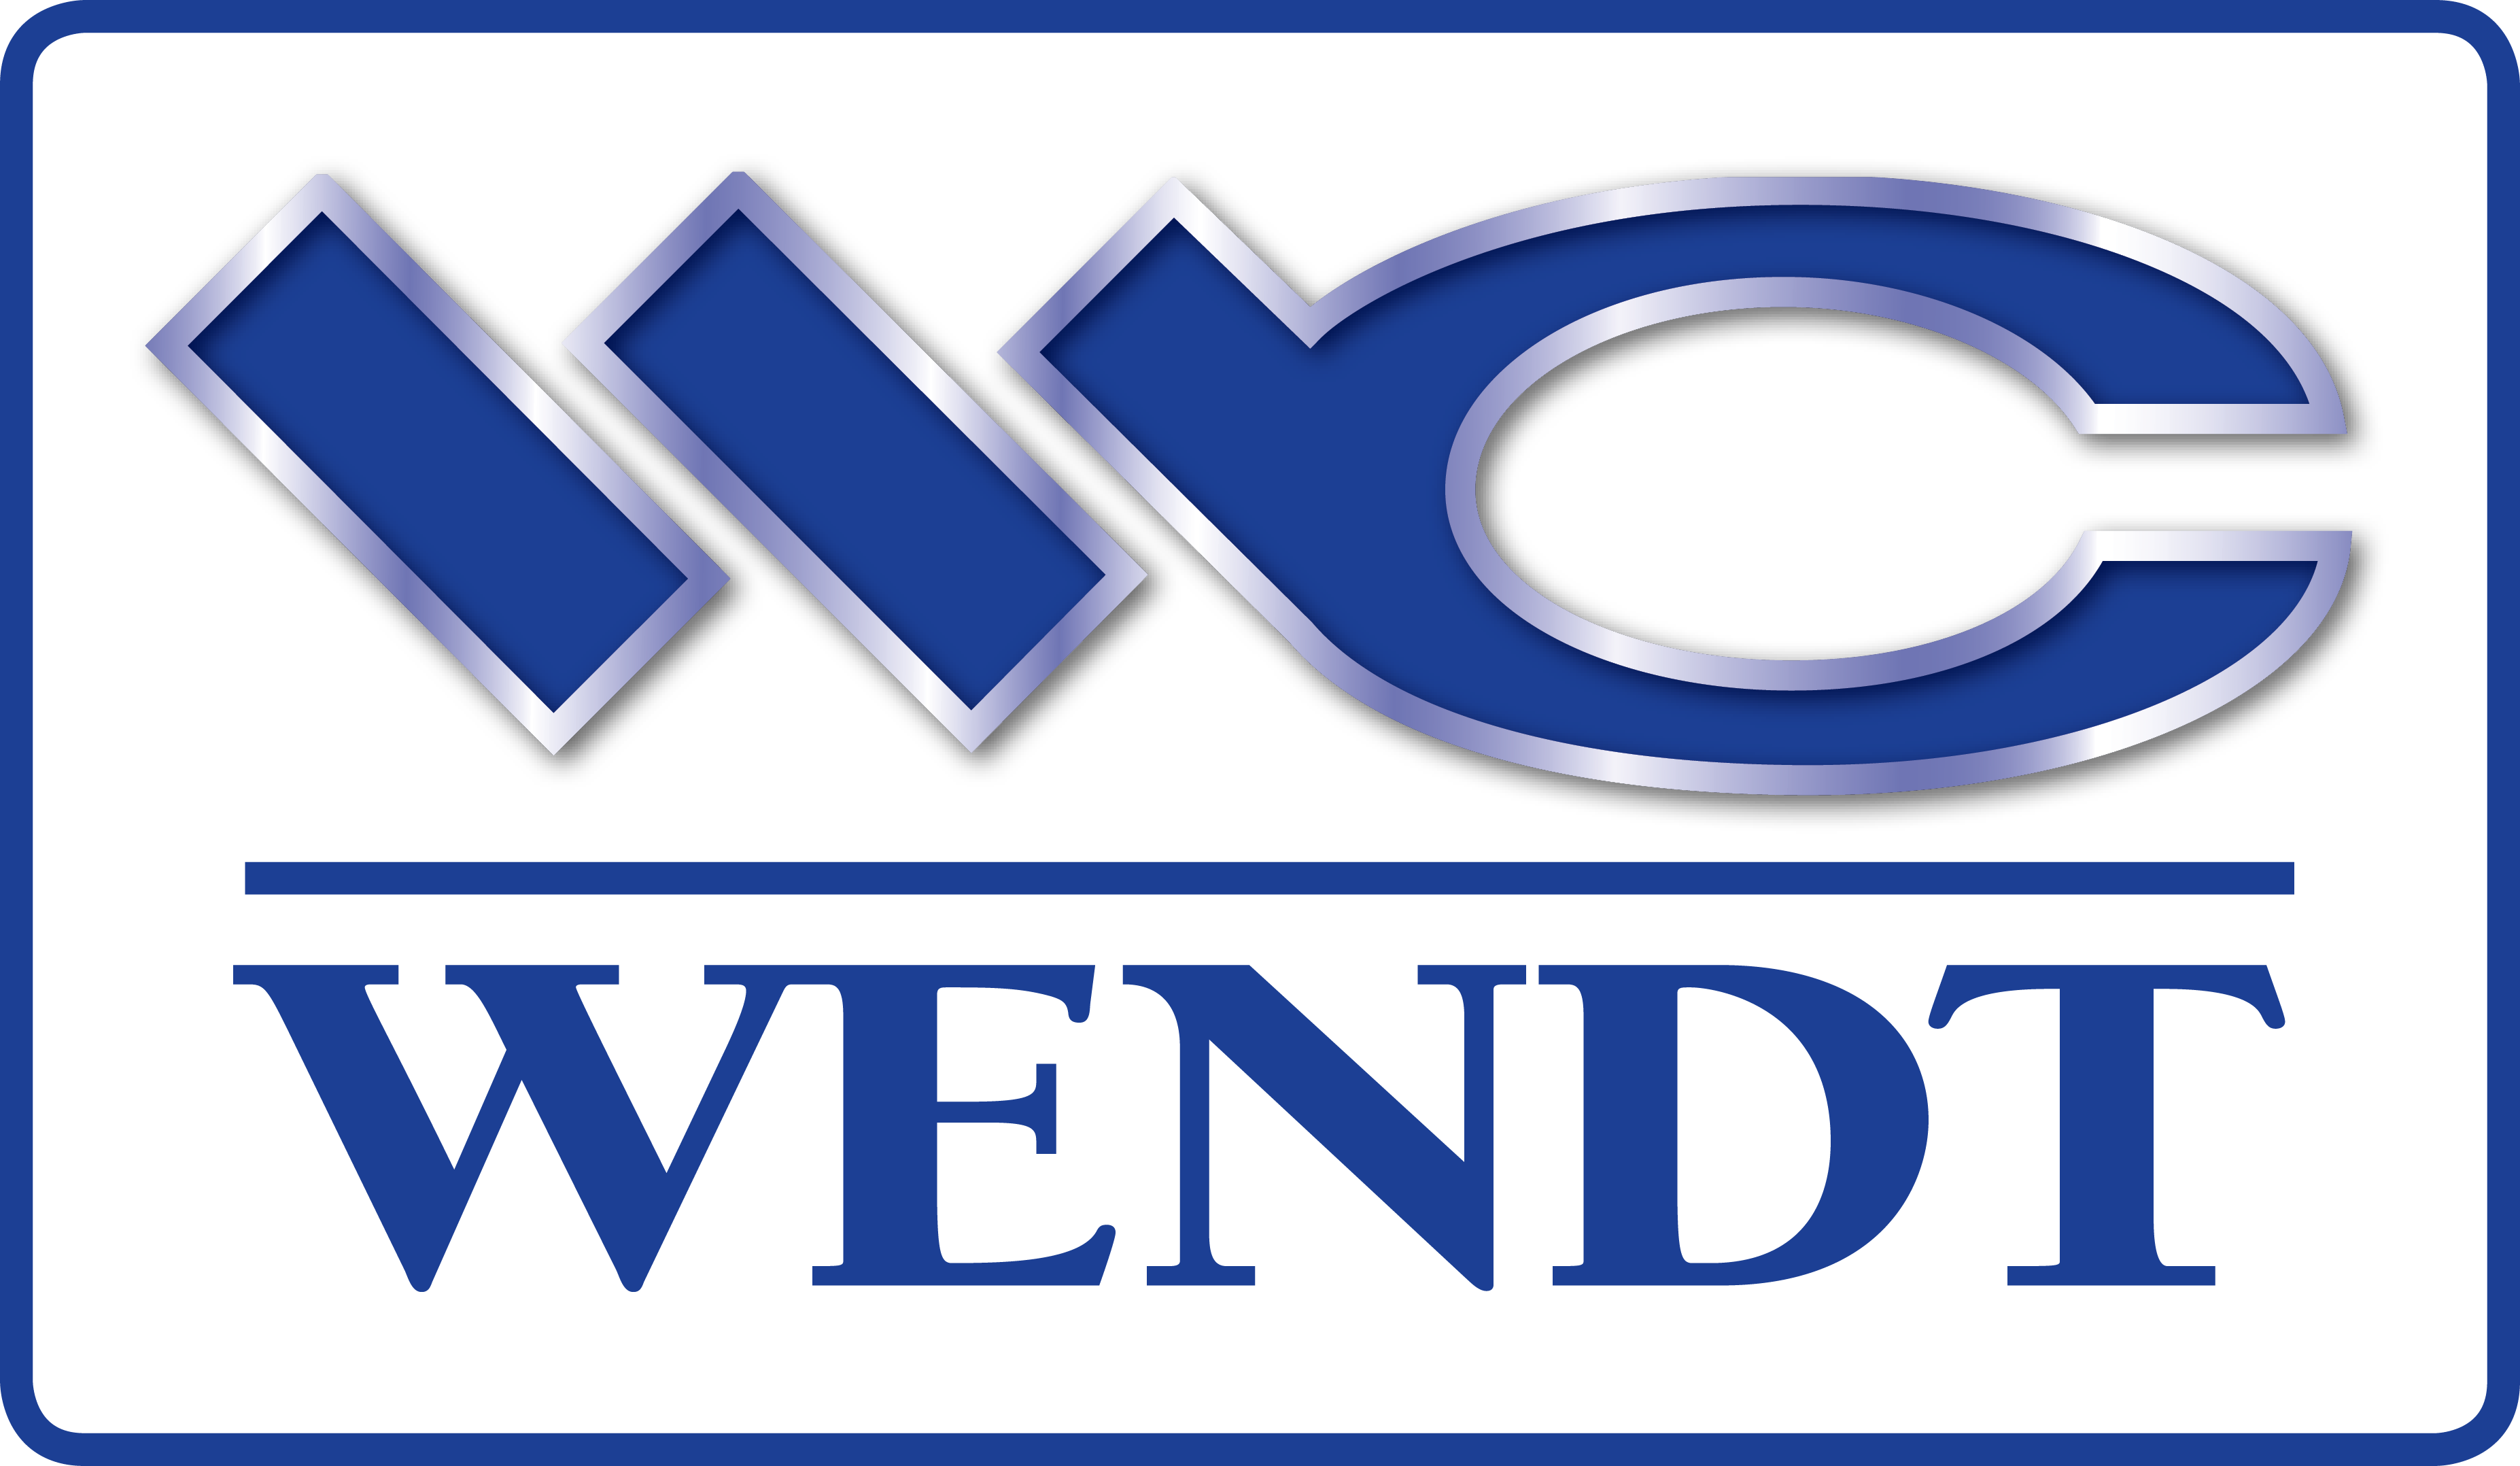 WENDT_logo